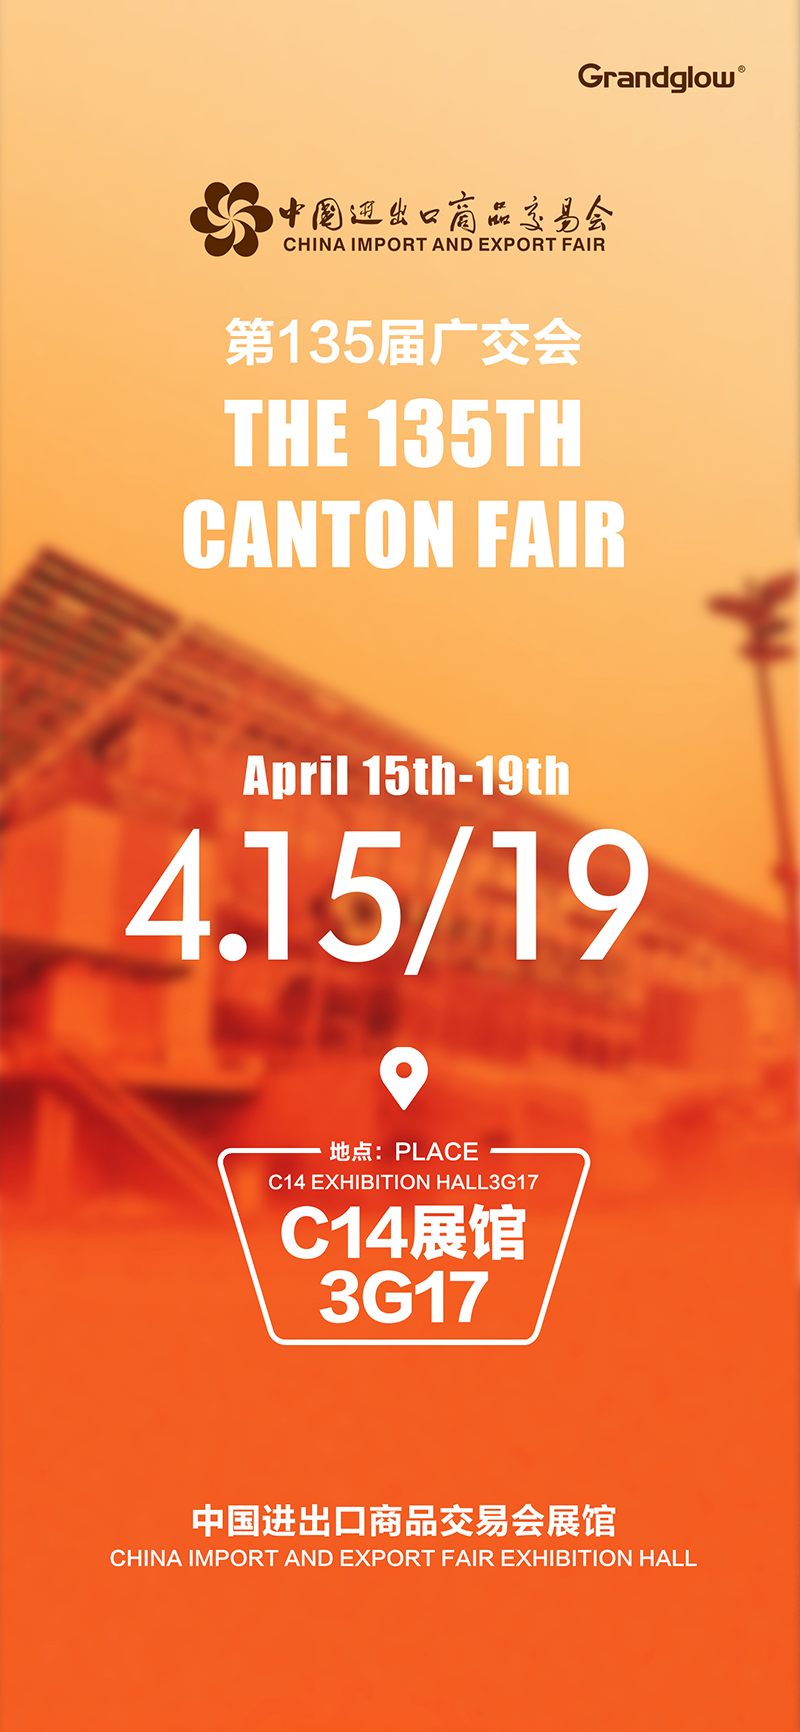 [Coming soon] The 135th Canton Fair